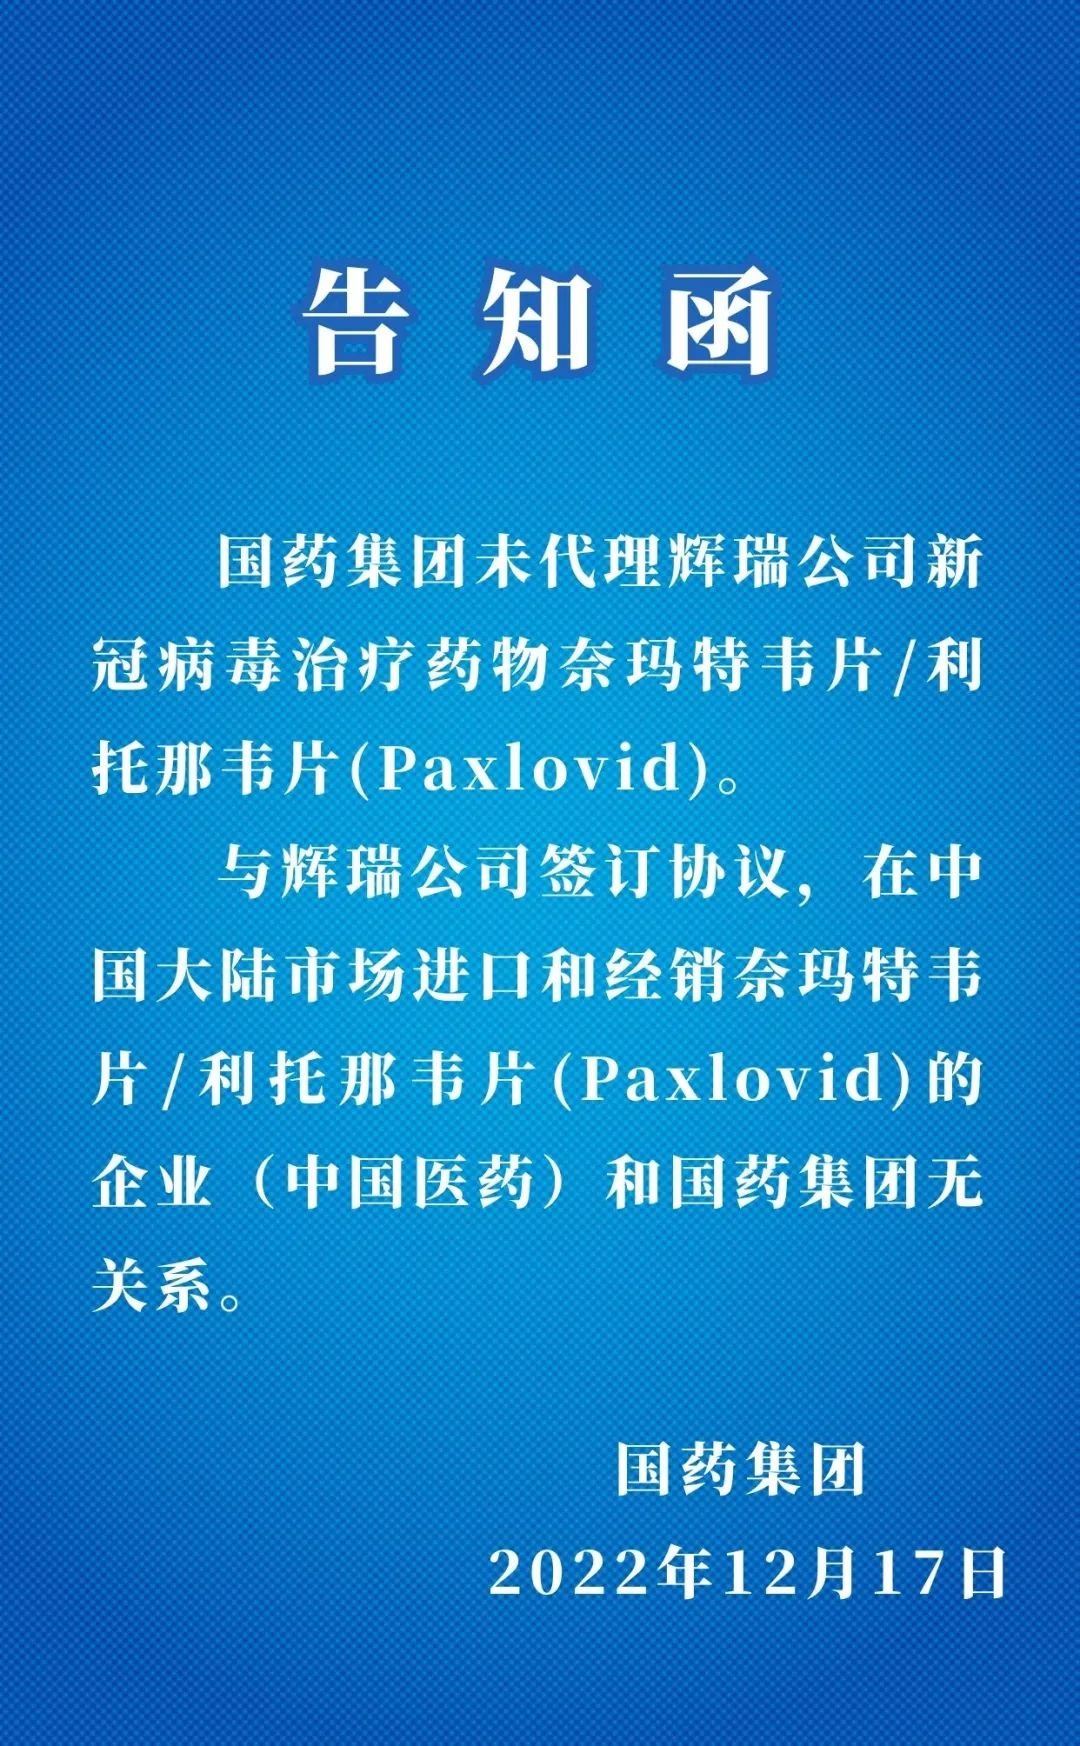 美称将用卫星监控中国澜沧江水电站 外交部:反对恶意挑拨